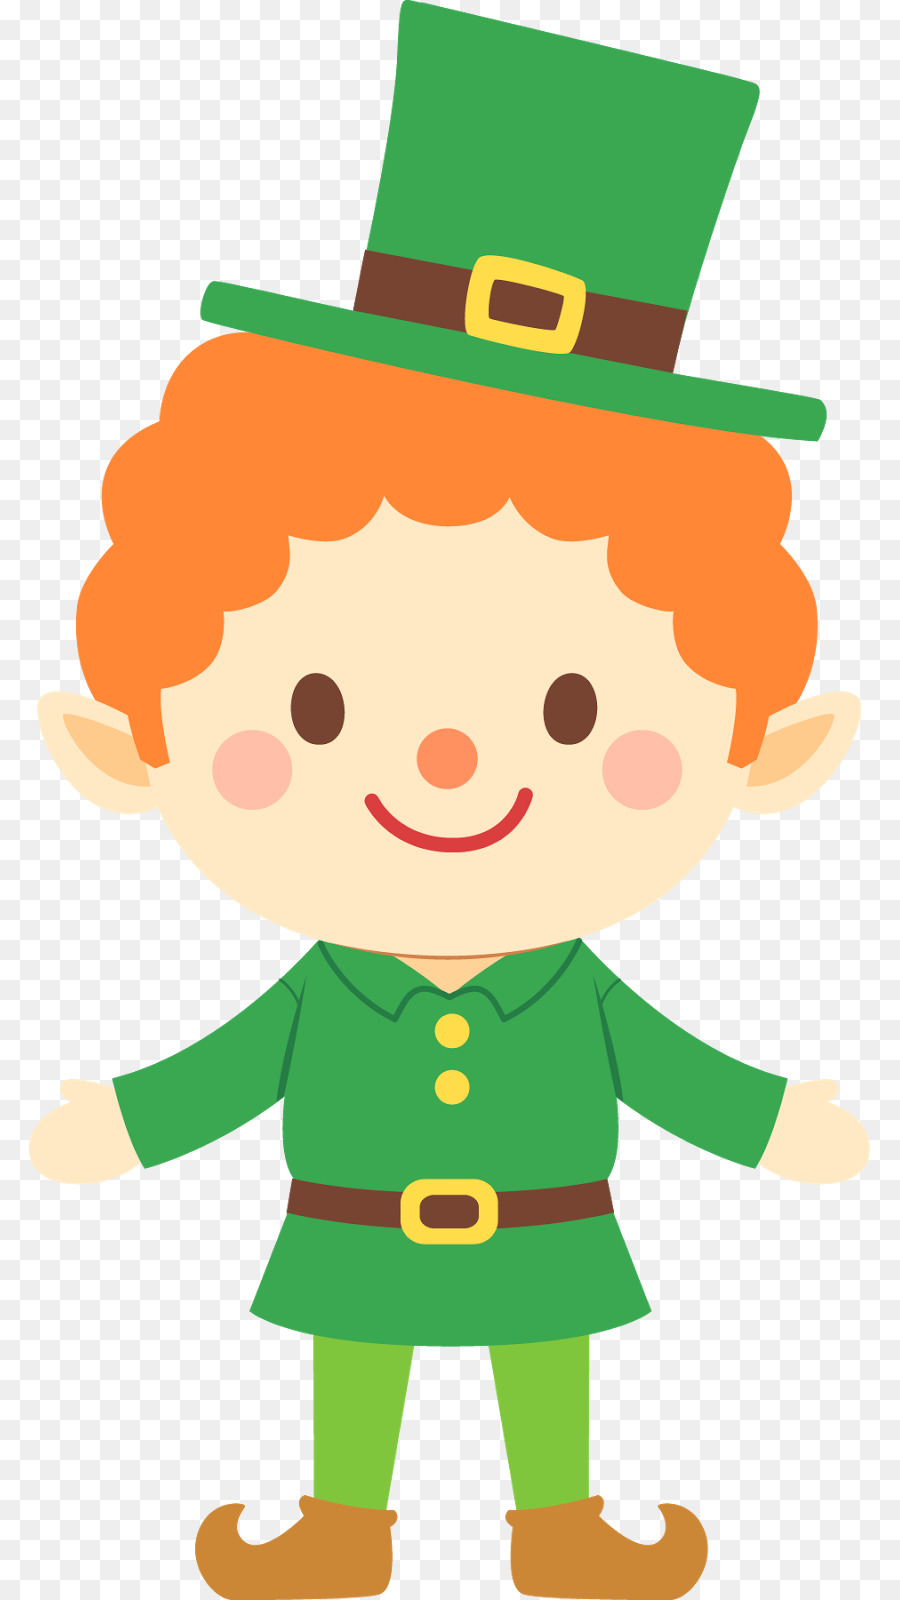 Leprechaun Saint Patricks Day Clip art - March Cliparts png download - 841*1600 - Free Transparent Leprechaun png Download.